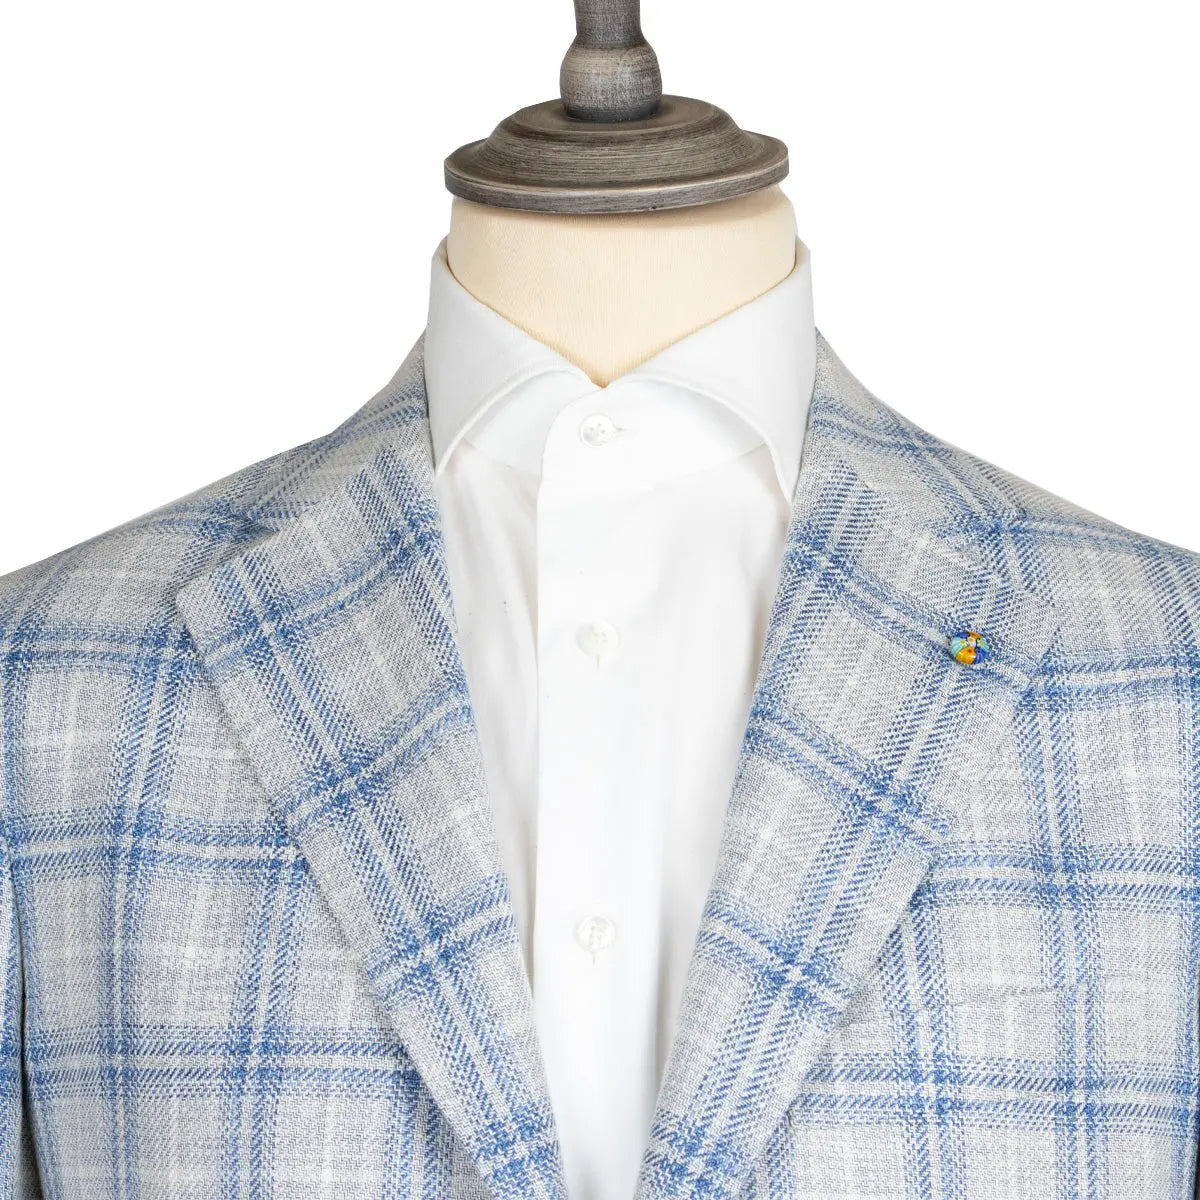 Cream & Blue Check Cotton, Linen, & Wool Jacket  Belvest   